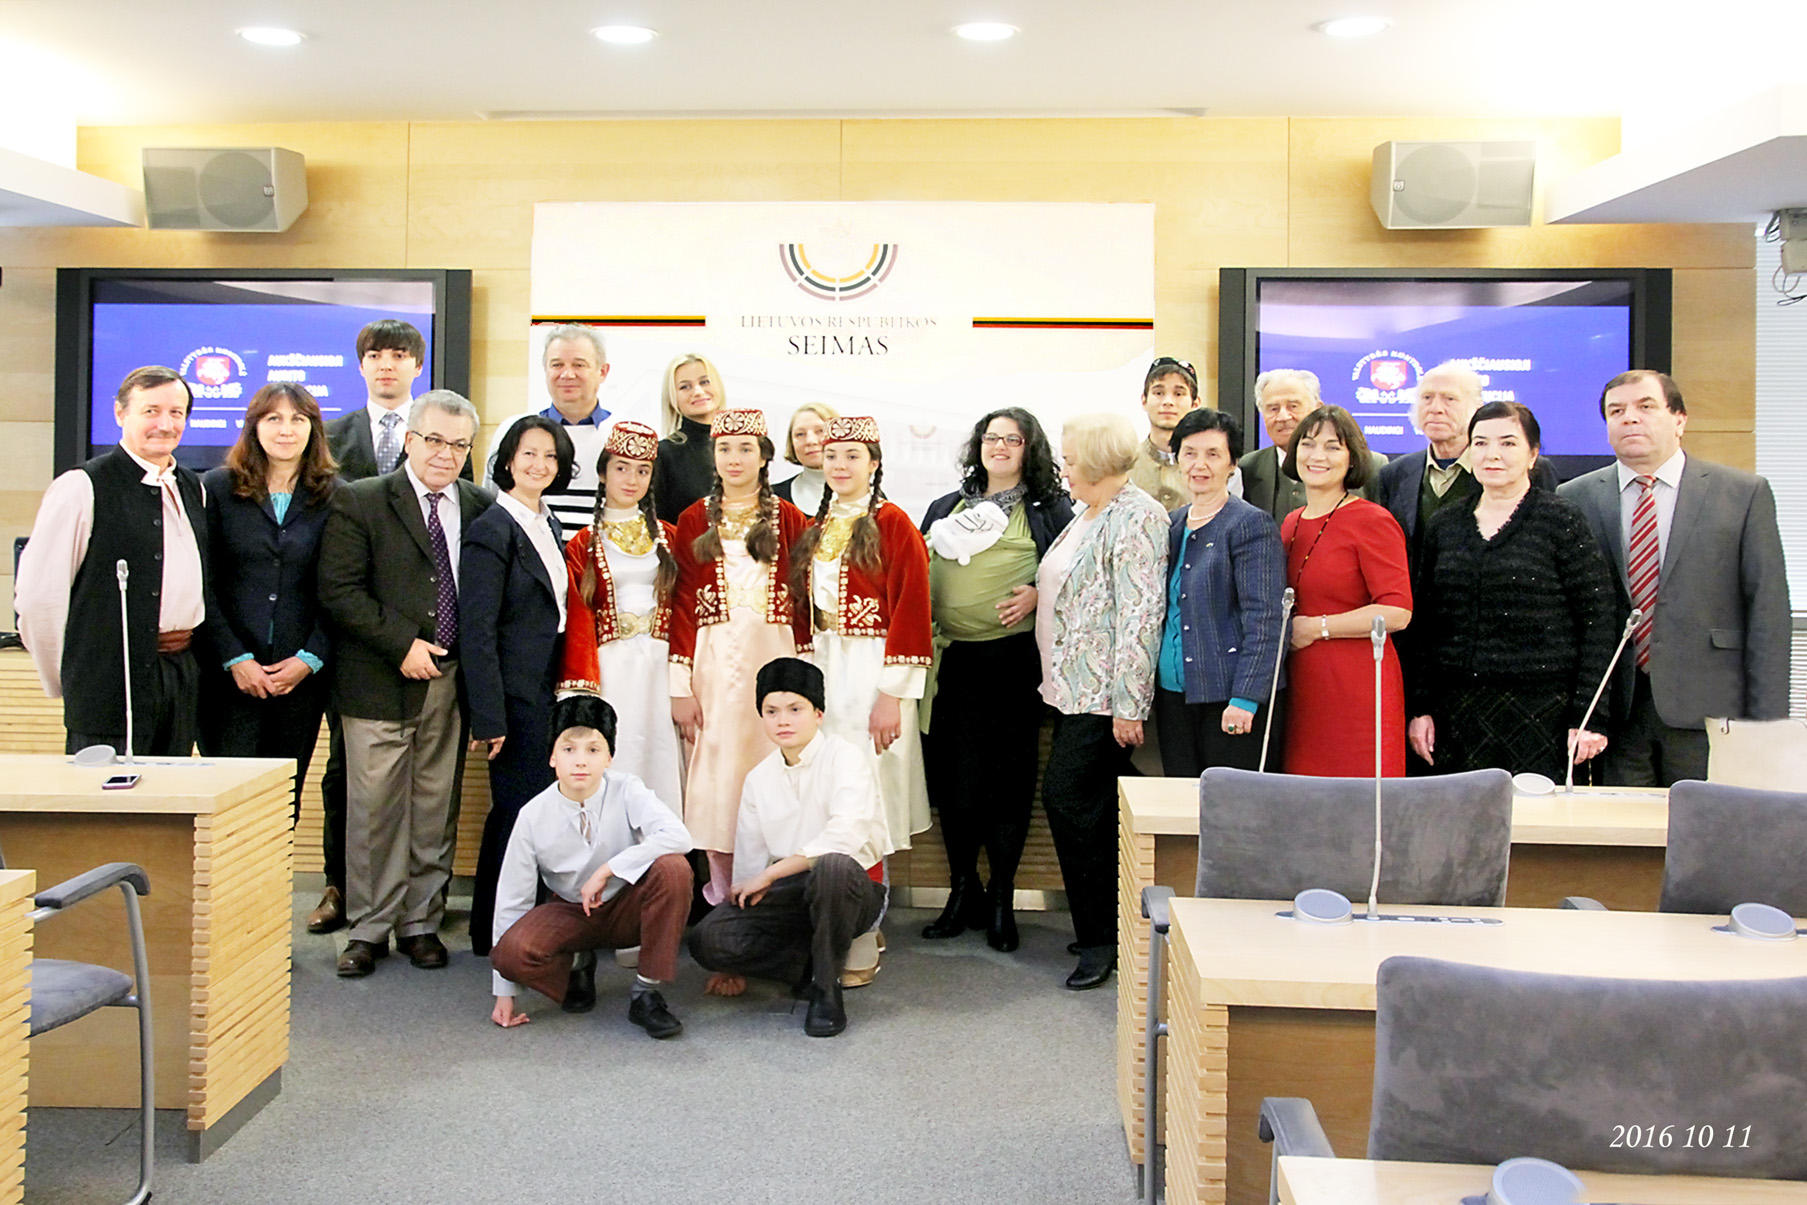 Azərbaycan diasporu Litva parlamentində keçirilən sərgidə təmsil olunub (FOTO)